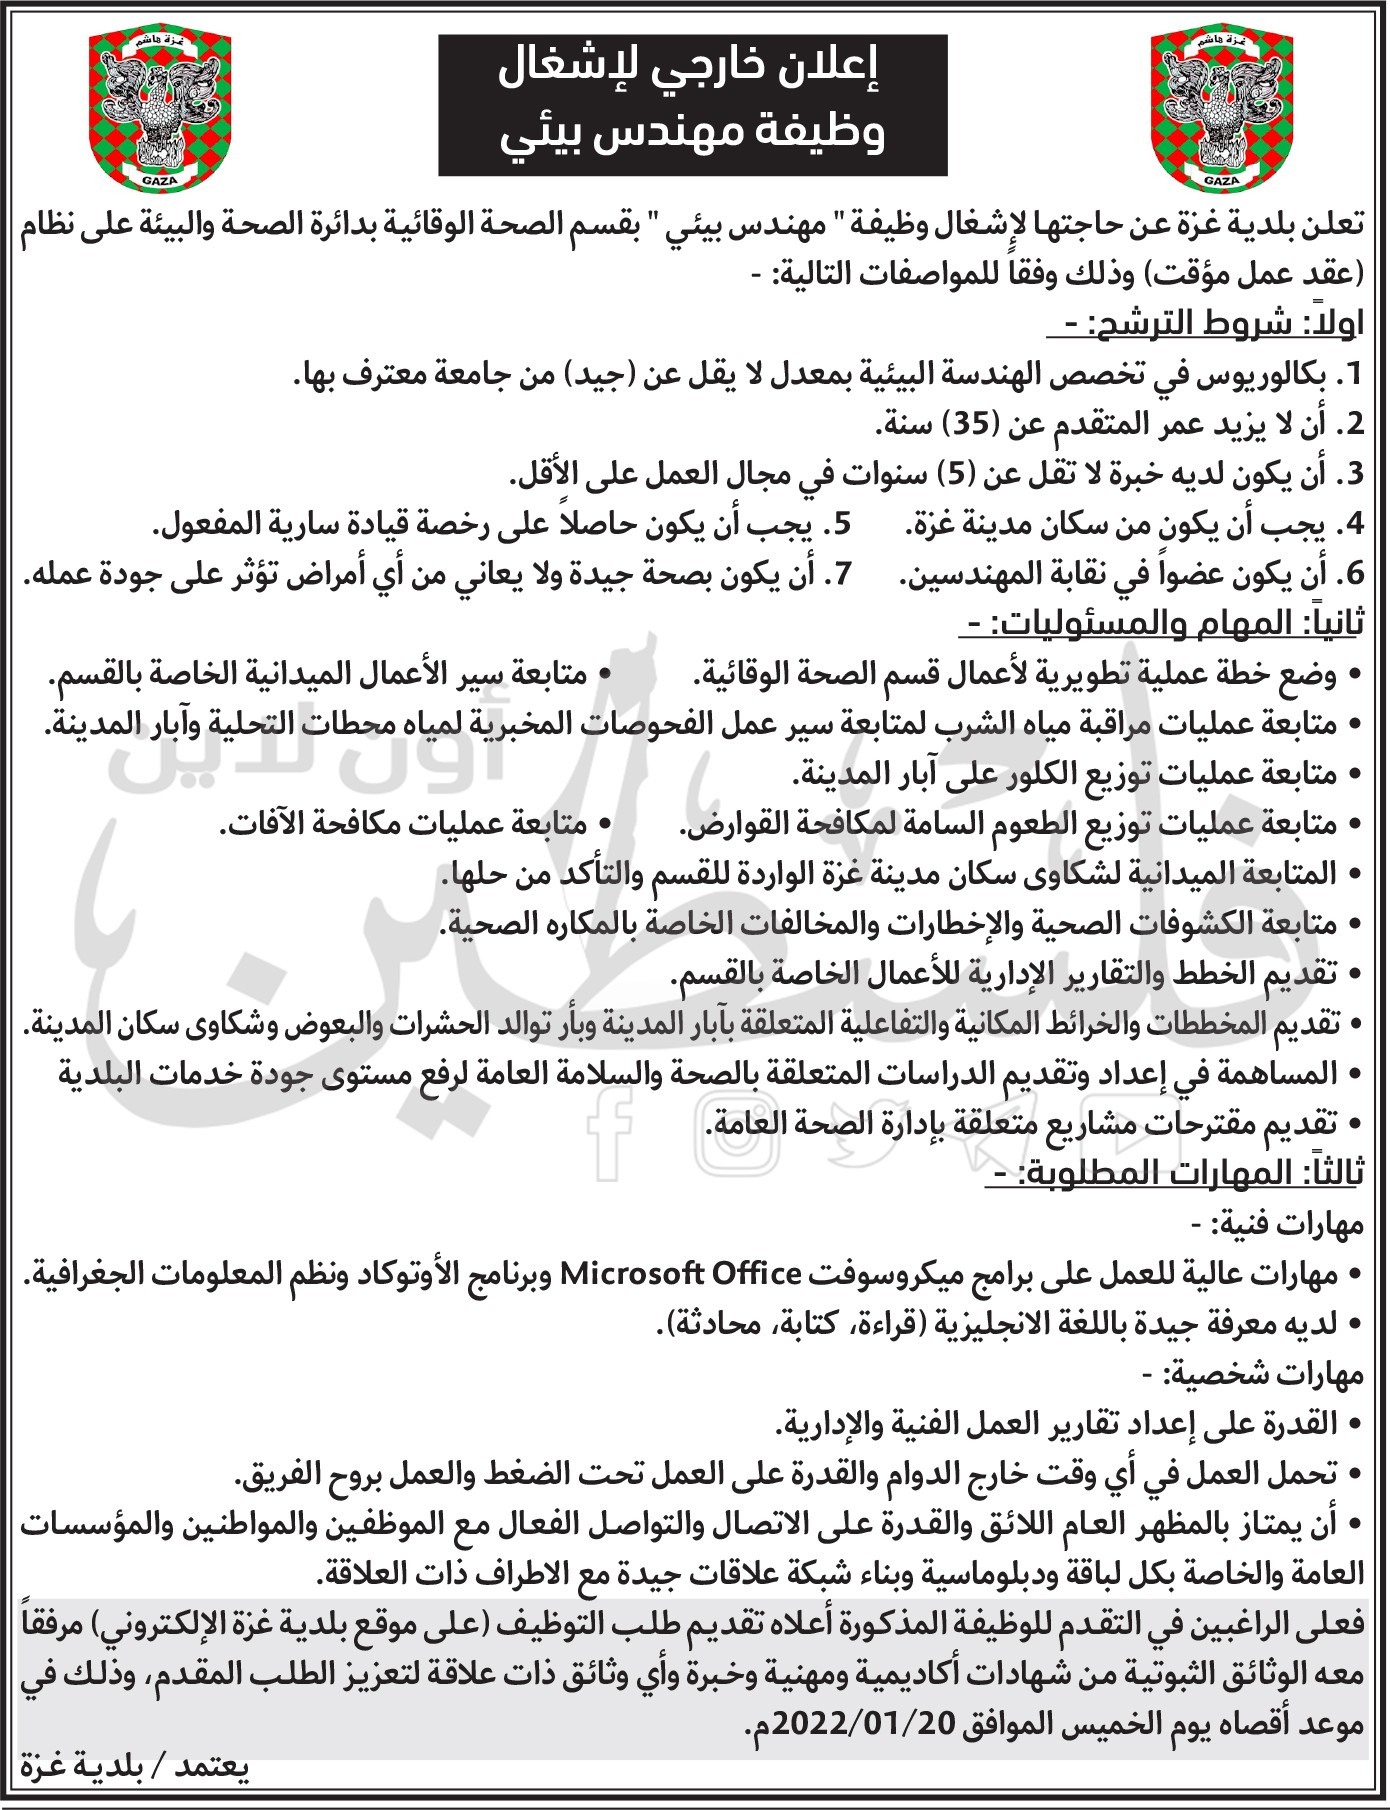 إعلان خارجي لإشغال وظيفة مهندس بيئي بقسم الصحةالوقائية بدائرة الصحة والبيئة في بلدية غزة.jpg